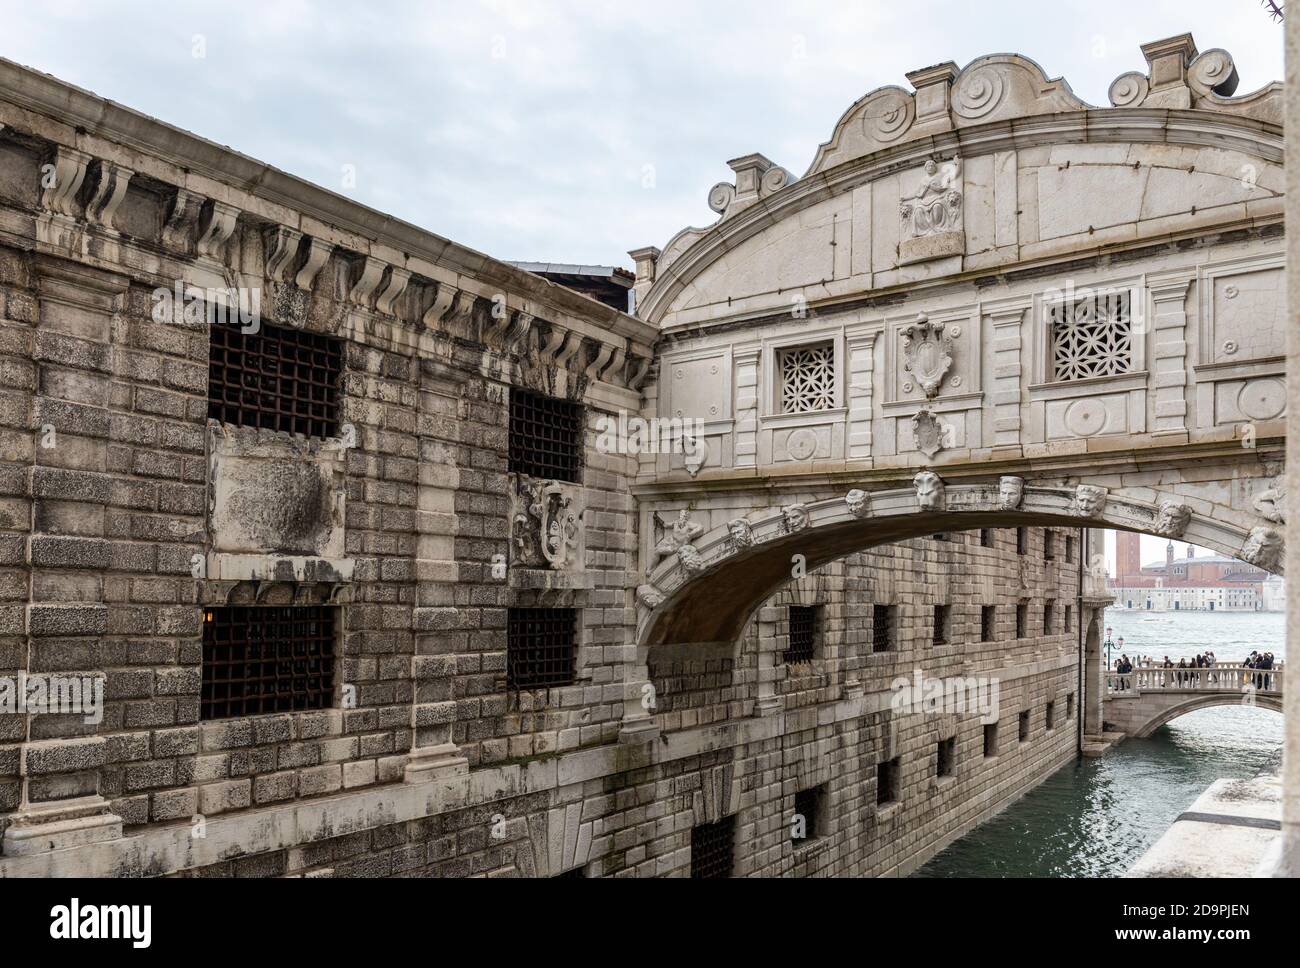 Primo piano del "Ponte dei Sospiri" o "Ponte dei Sospiri", un ponte di fama mondiale che collega il Palazzo dei Dogi alle prigioni, San Marco, Venezia, Italia Foto Stock